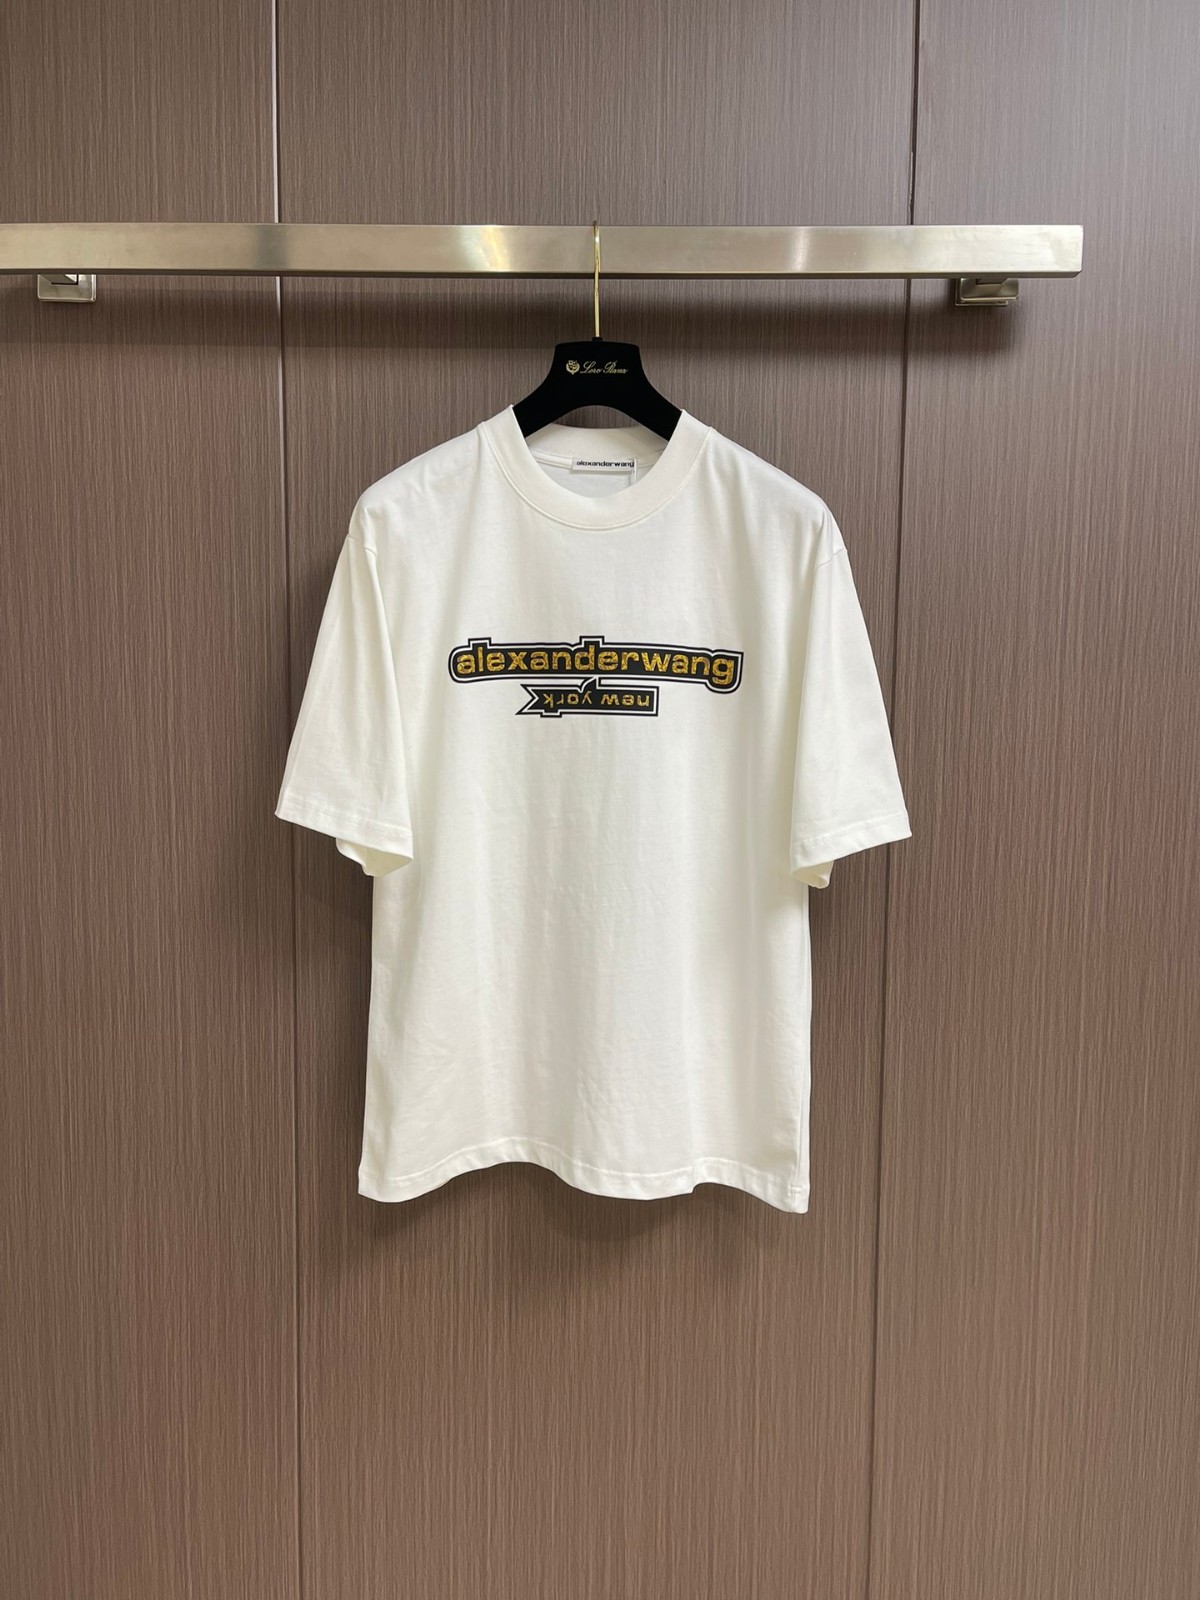 アレキサンダーワング Tシャツ コピー シンプル ロゴ入り クルーネック 半袖Tシャツ ホワイト